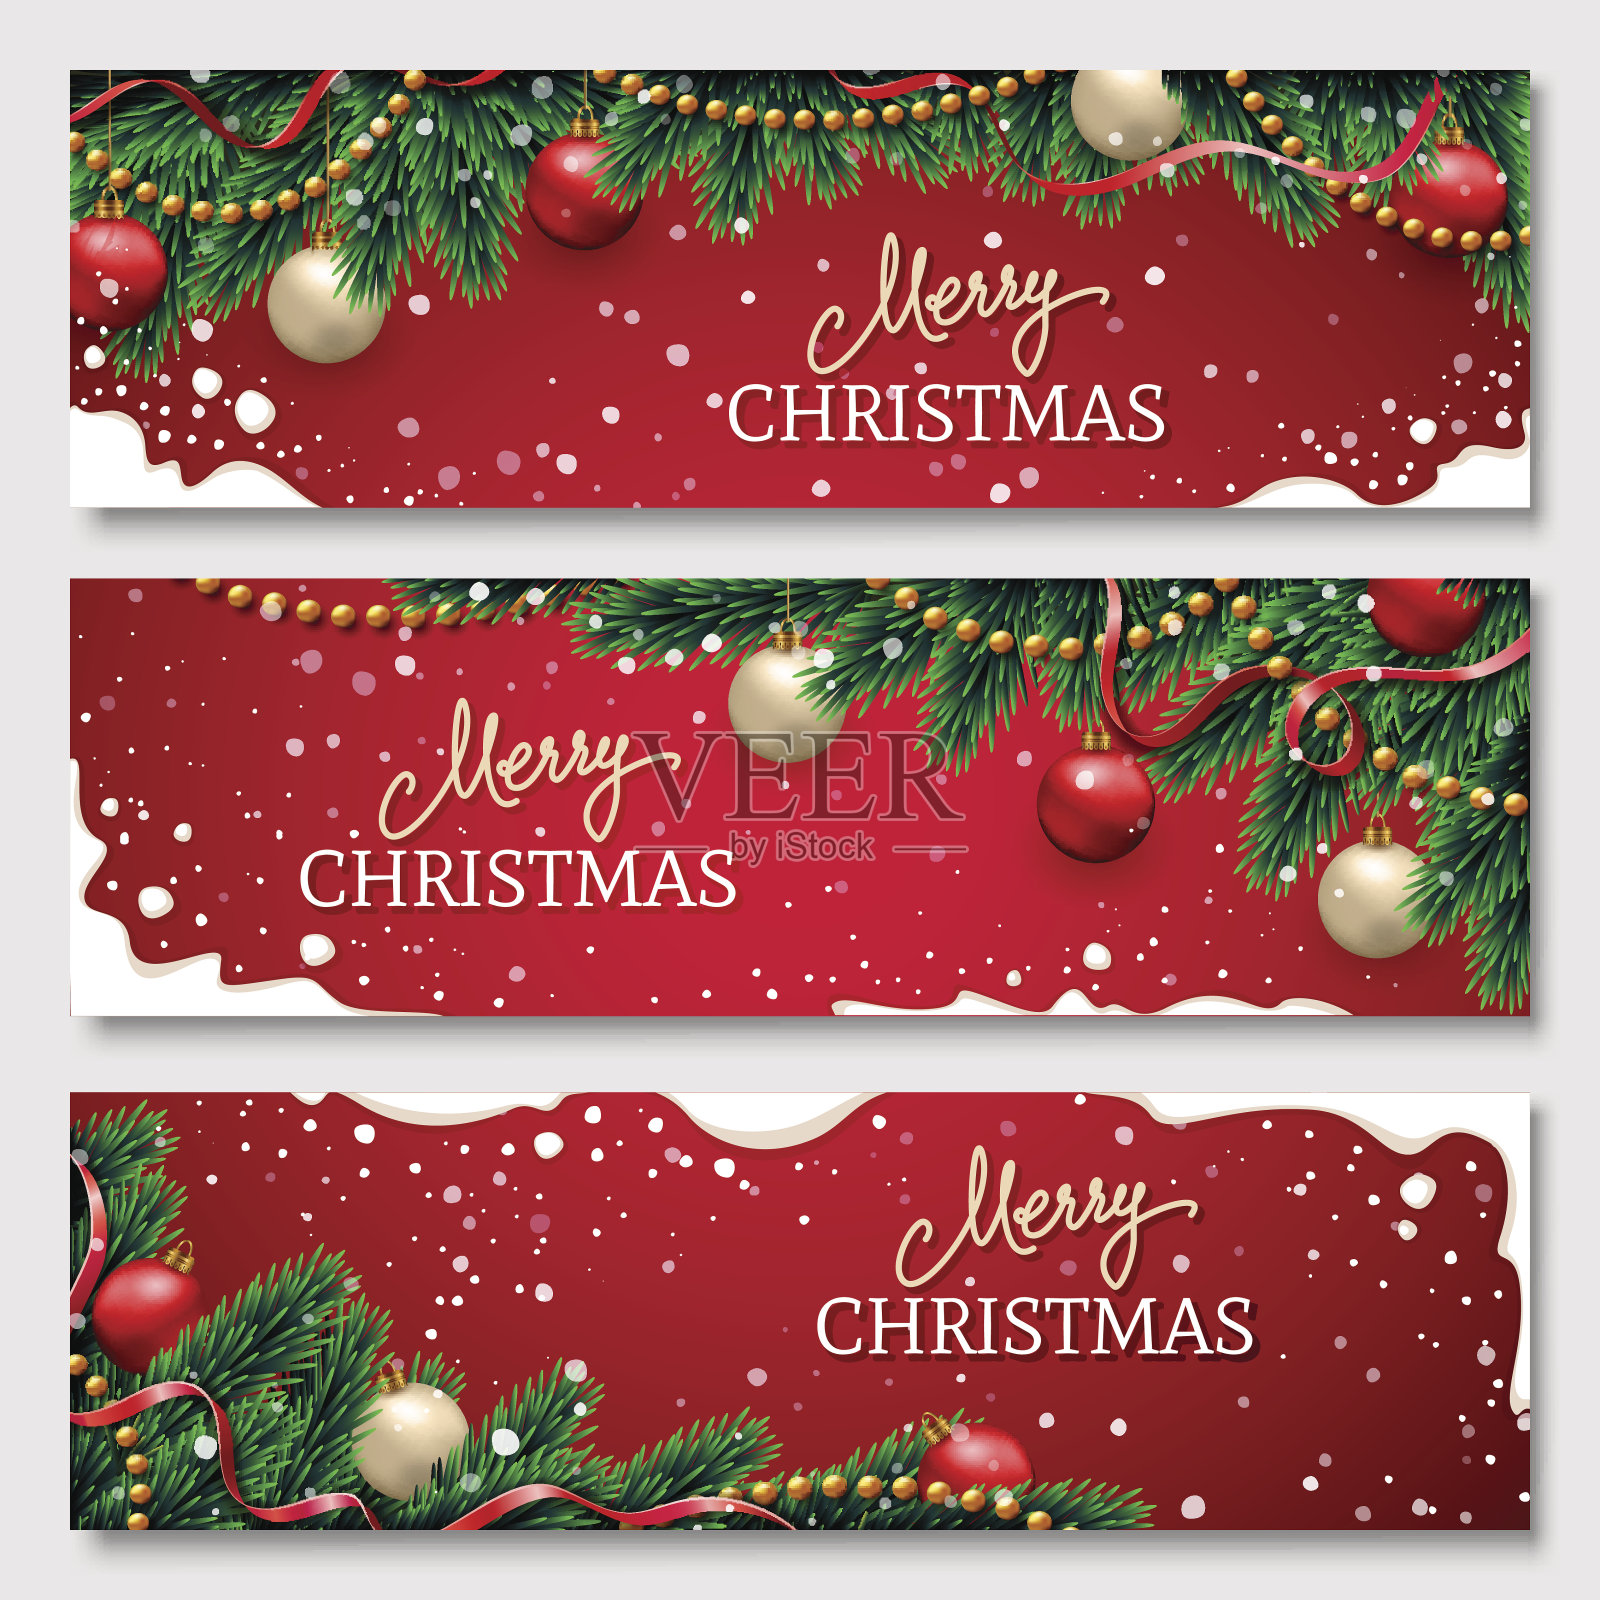 用用彩带、红色和金色的球和花环装饰的冷杉树枝做成的圣诞横幅。红色背景上的雪帧。为你的网站设计节日标题。设计模板素材